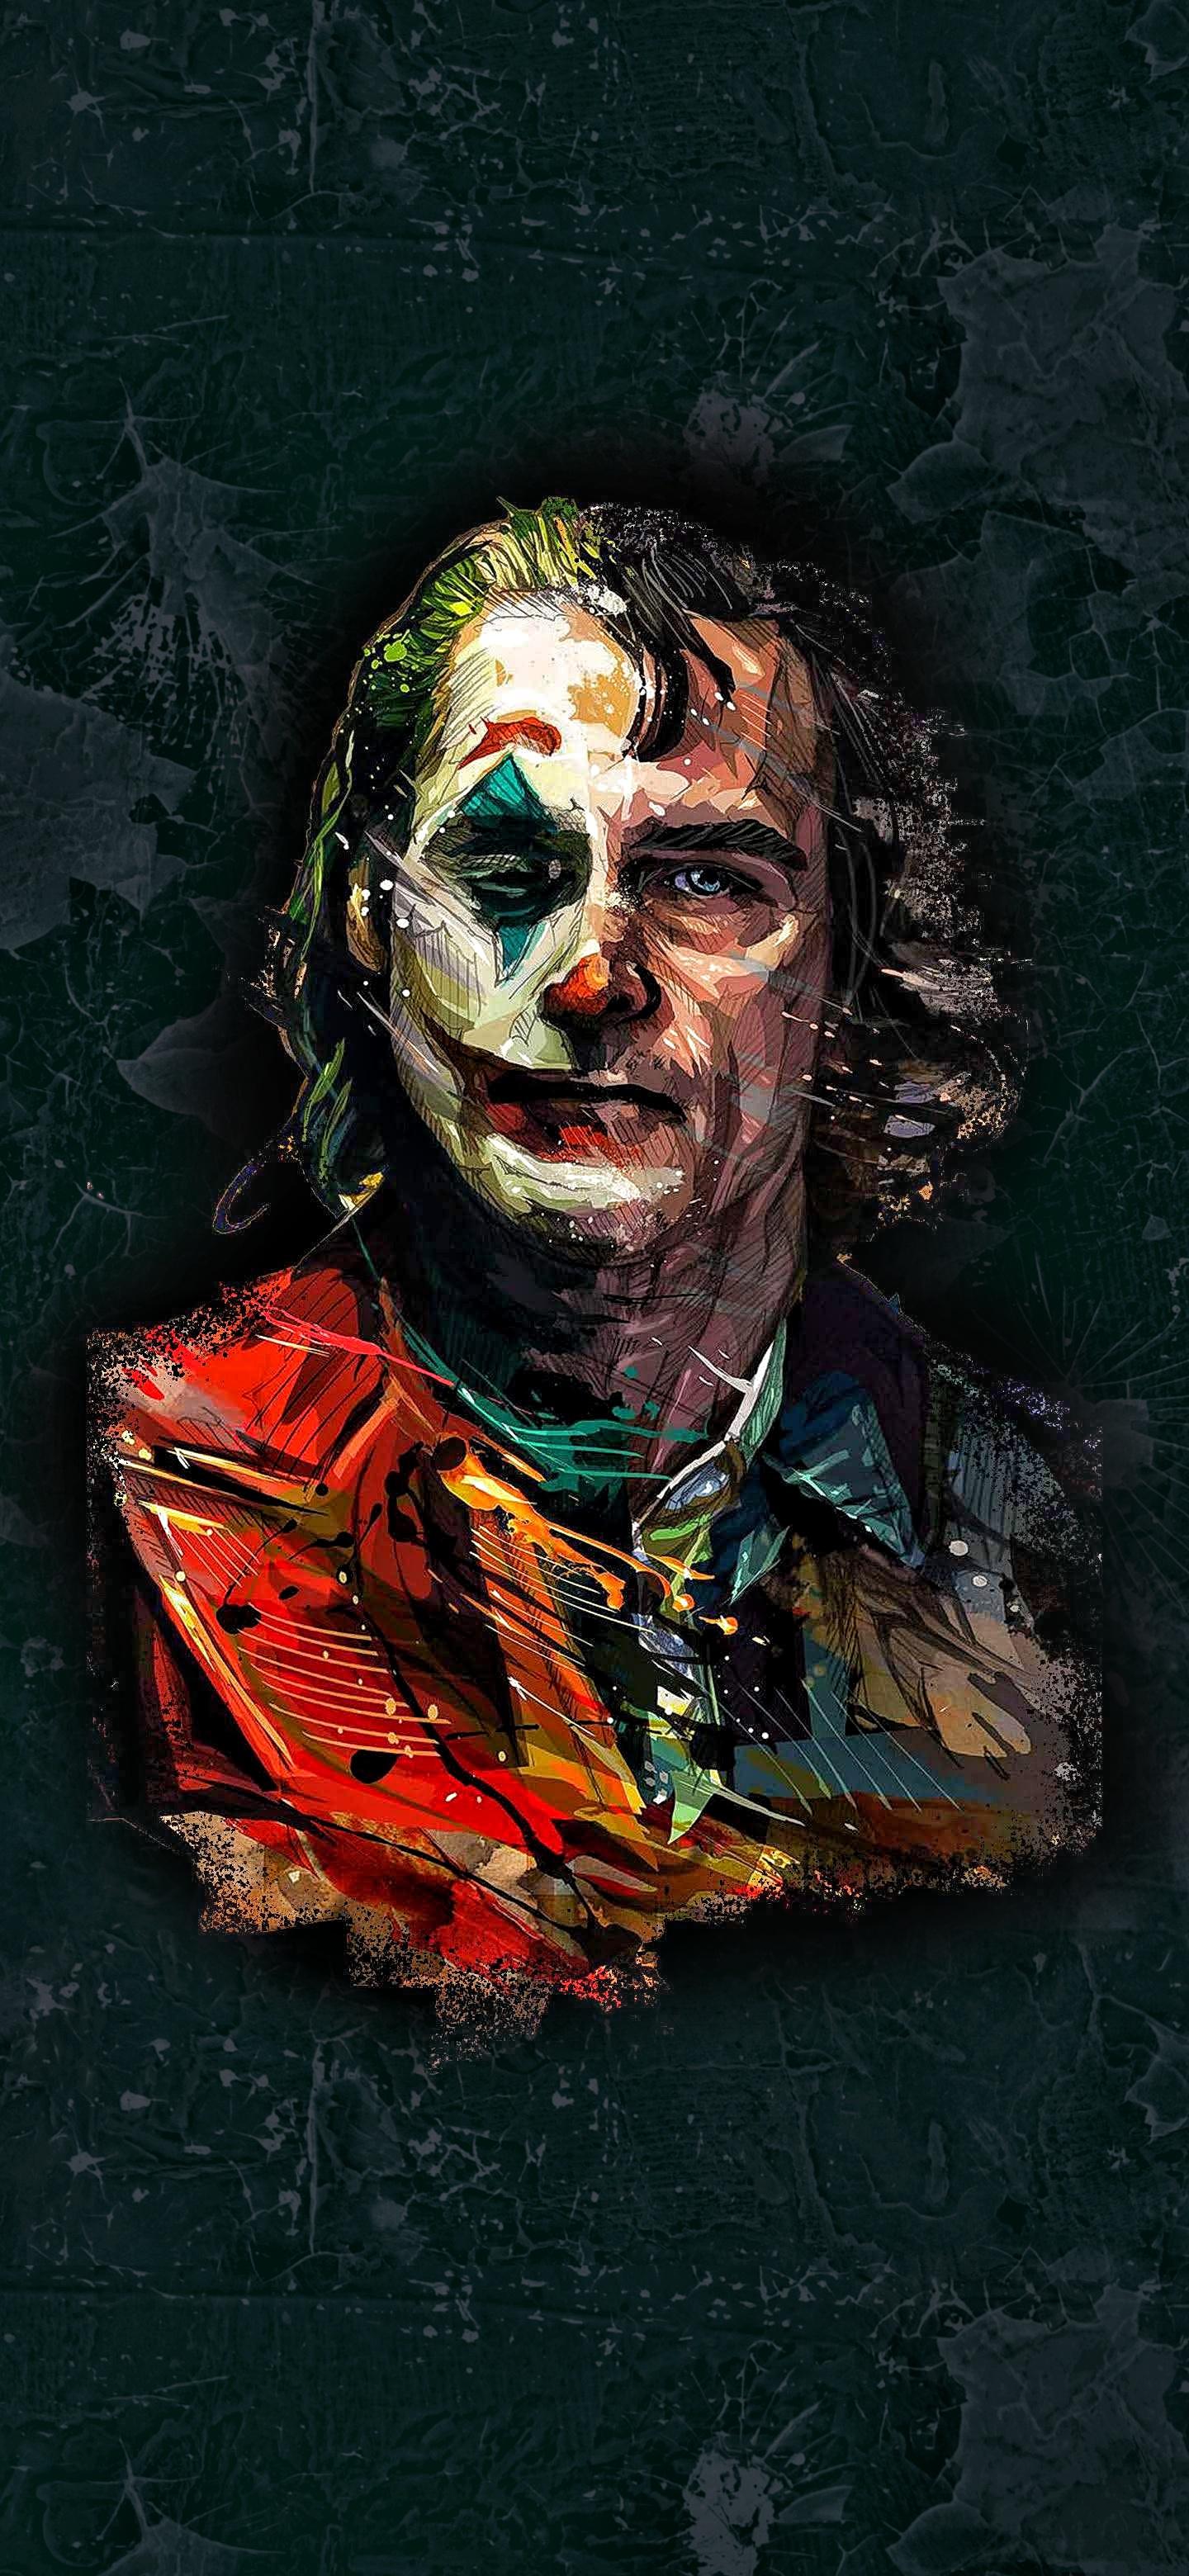 Colorful Joker art wallpaper